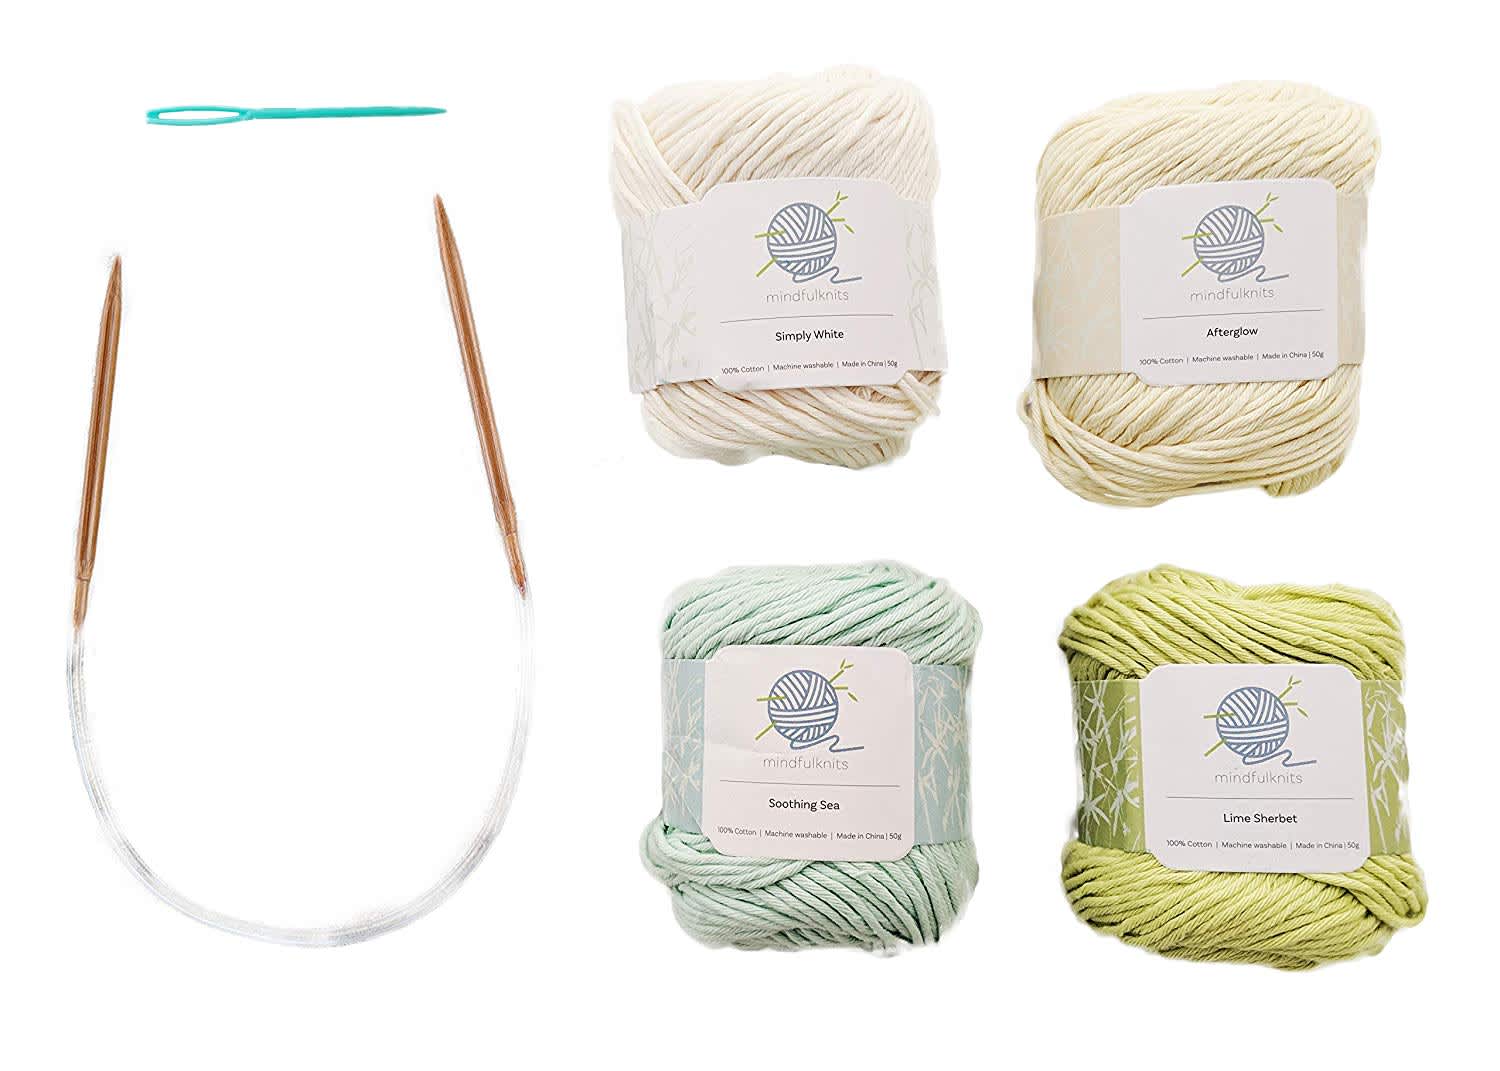 Knitting Kits for Beginners